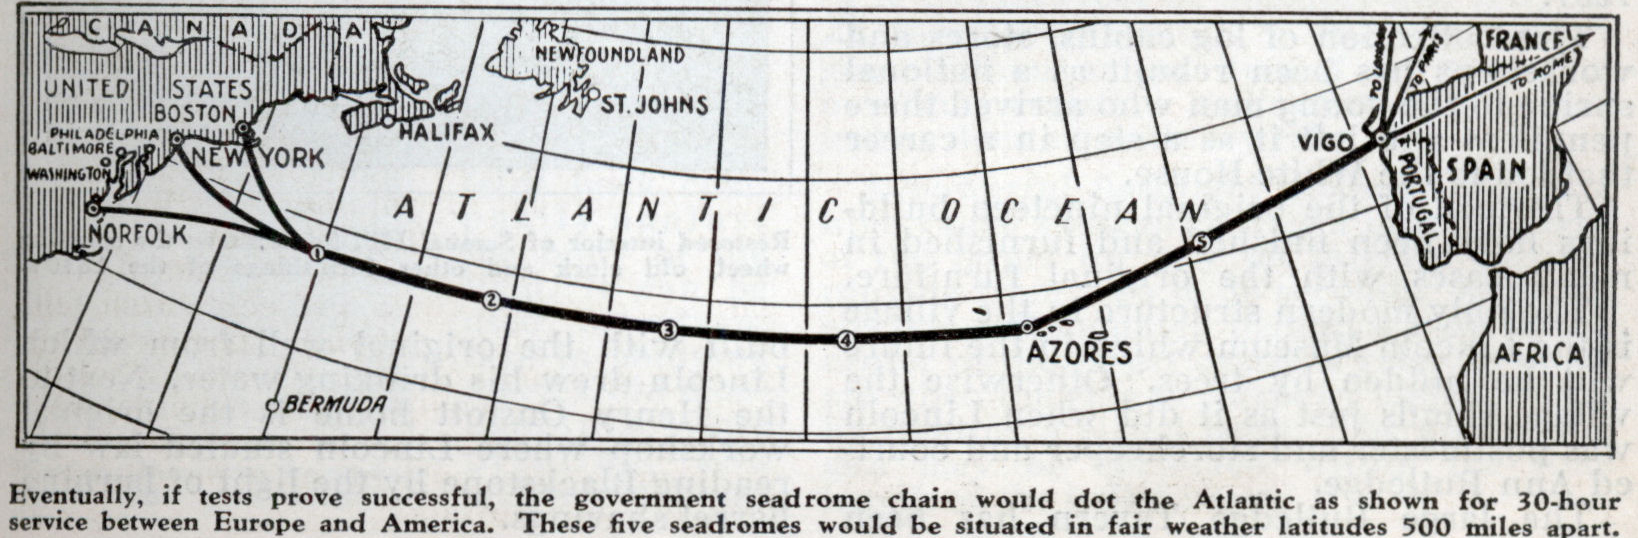 A ruta do proxecto de Armstrong entre Nova York e Vigo con seadromes.